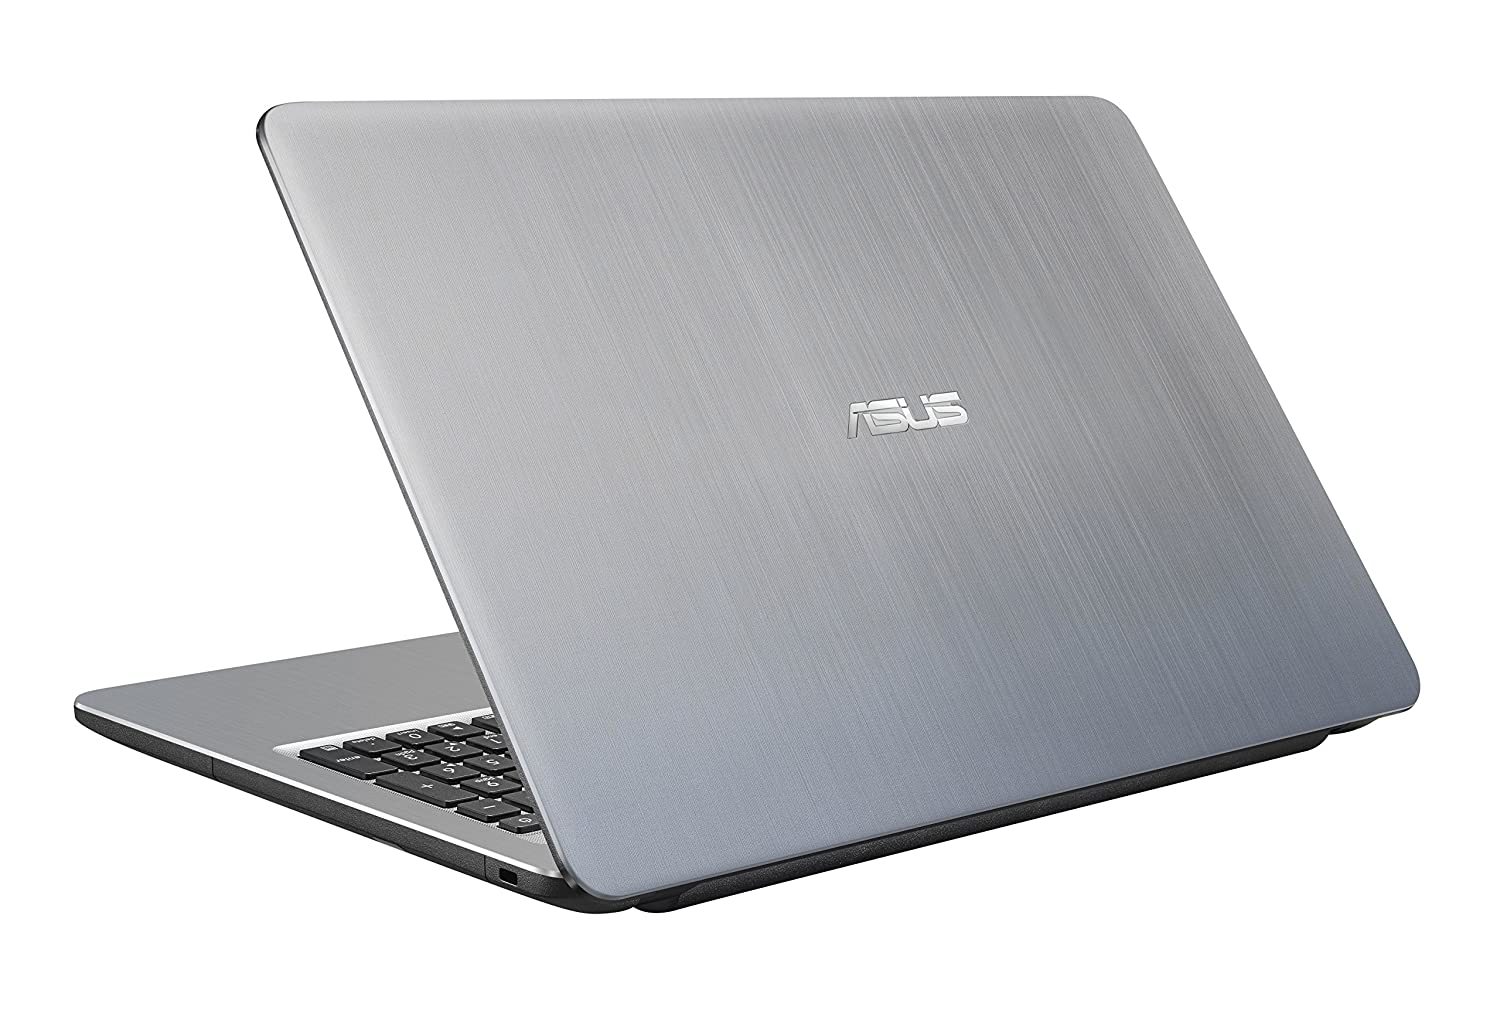 Asus X540LA-XX596D 15.6-inch Laptop